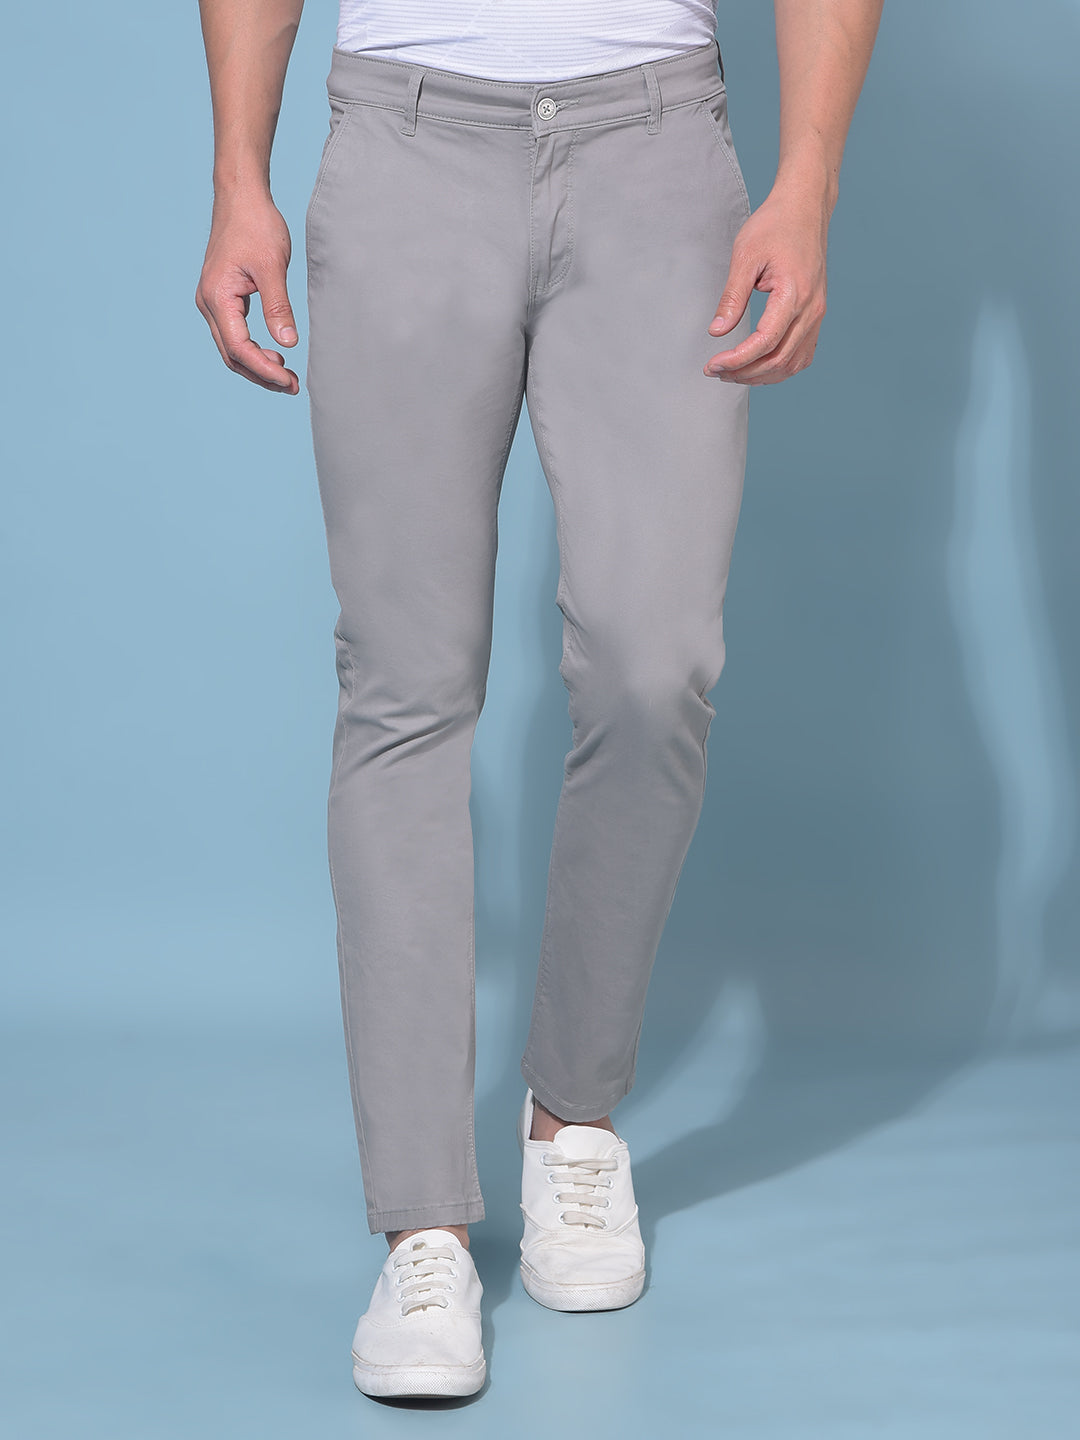 Grey Stretchable Cotton Trousers-Men Trousers-Crimsoune Club